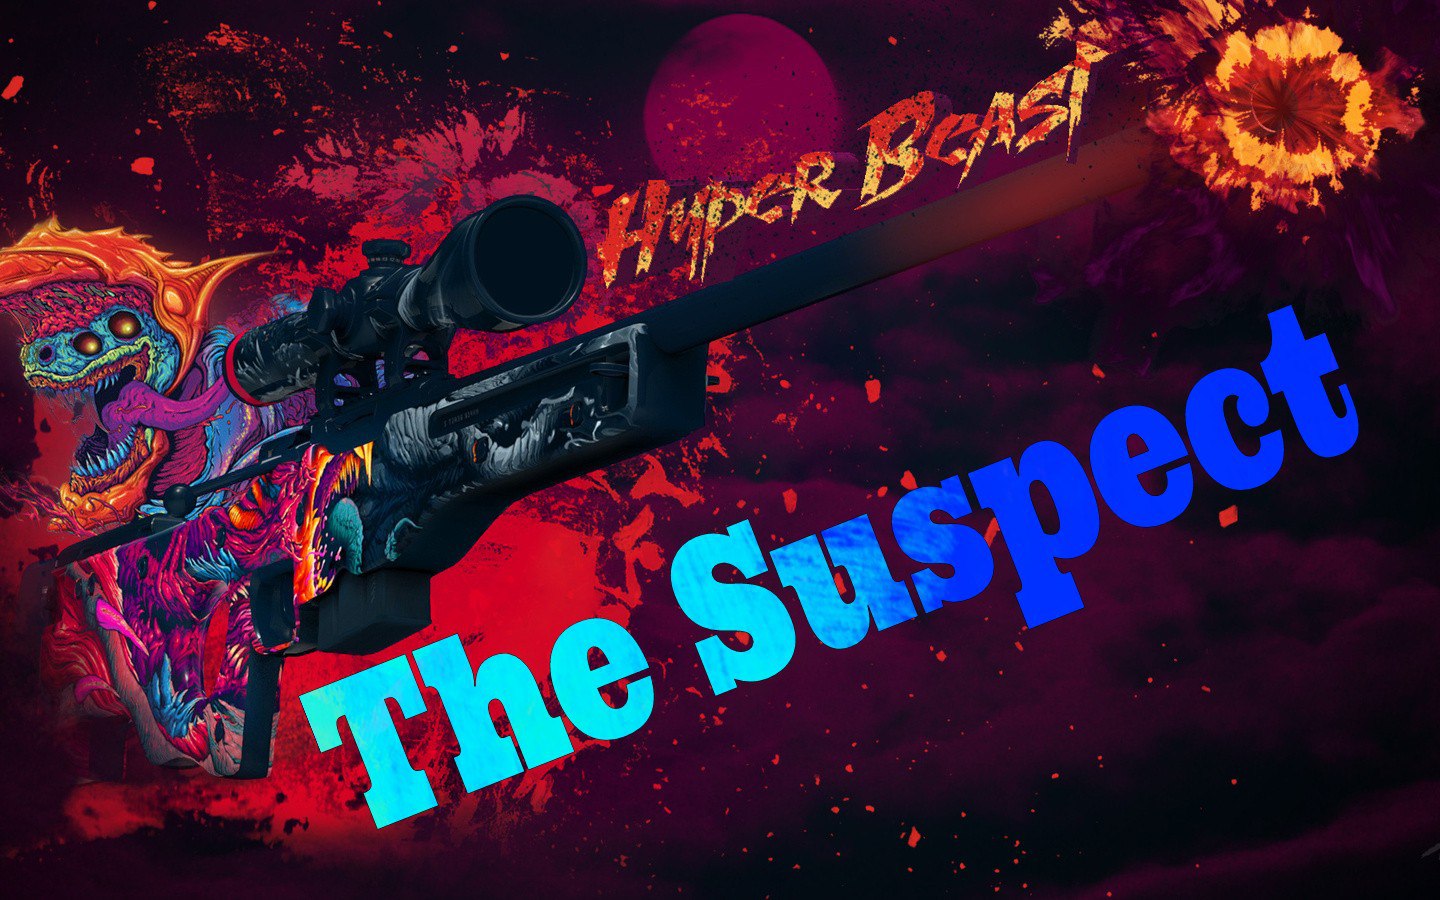 The_Suspect